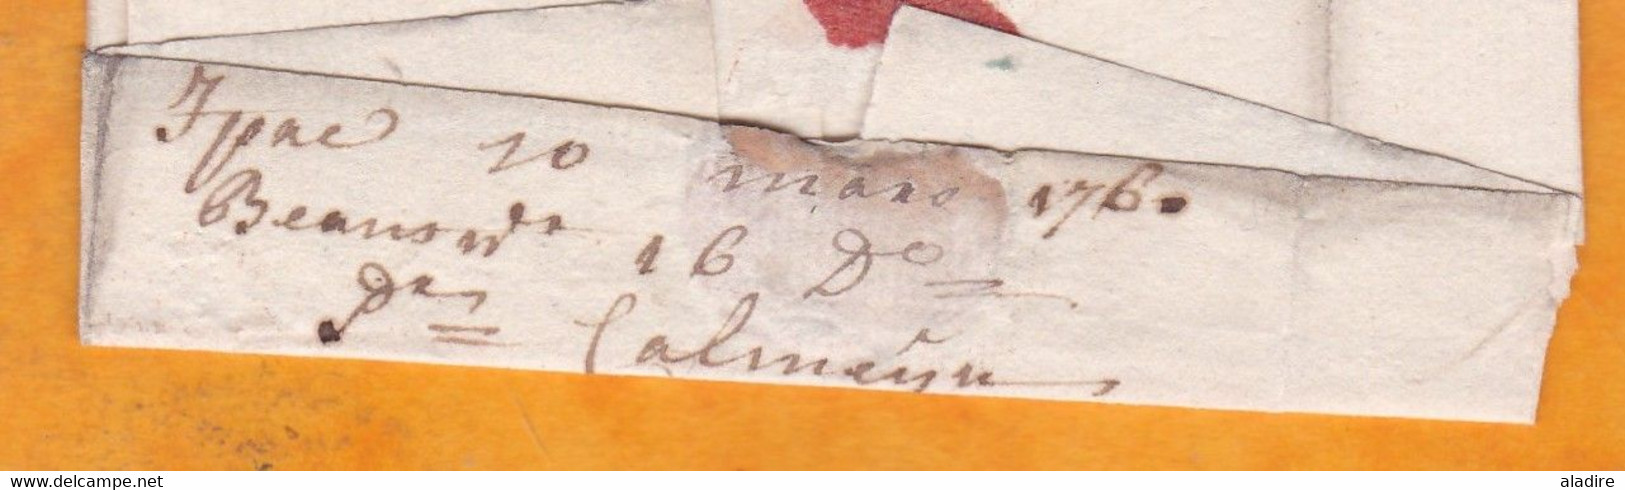 1760 - Marque Postale IPRES En Rouge Sur Enveloppe De YPRES, Ieper, Pays Bas Autrichiens Vers OOSTENDE, Ostende - 1714-1794 (Pays-Bas Autrichiens)